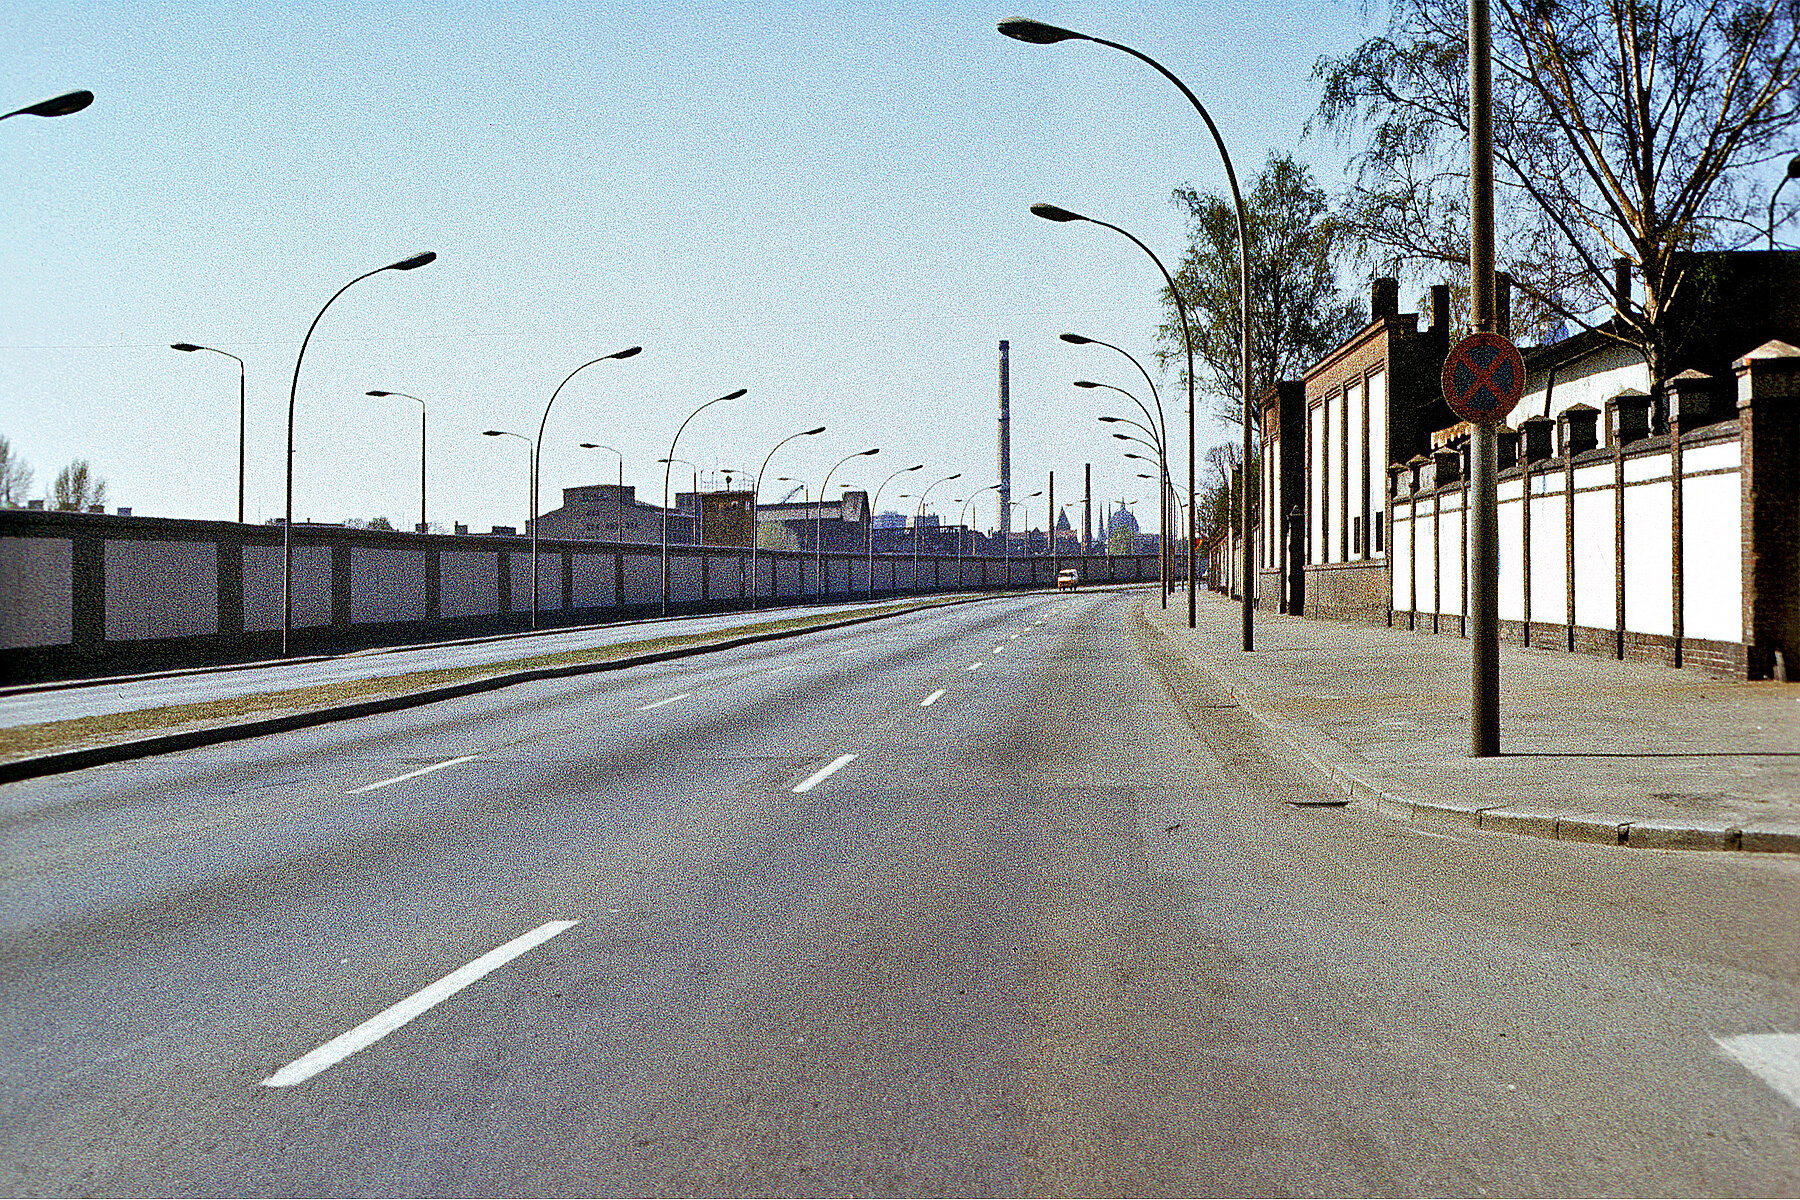 Straßenverlauf mit Grenzanlage. Viele Straßenlaternen stehen sowohl in Richtung Straße als auch in Richtung der Grenzanlage.